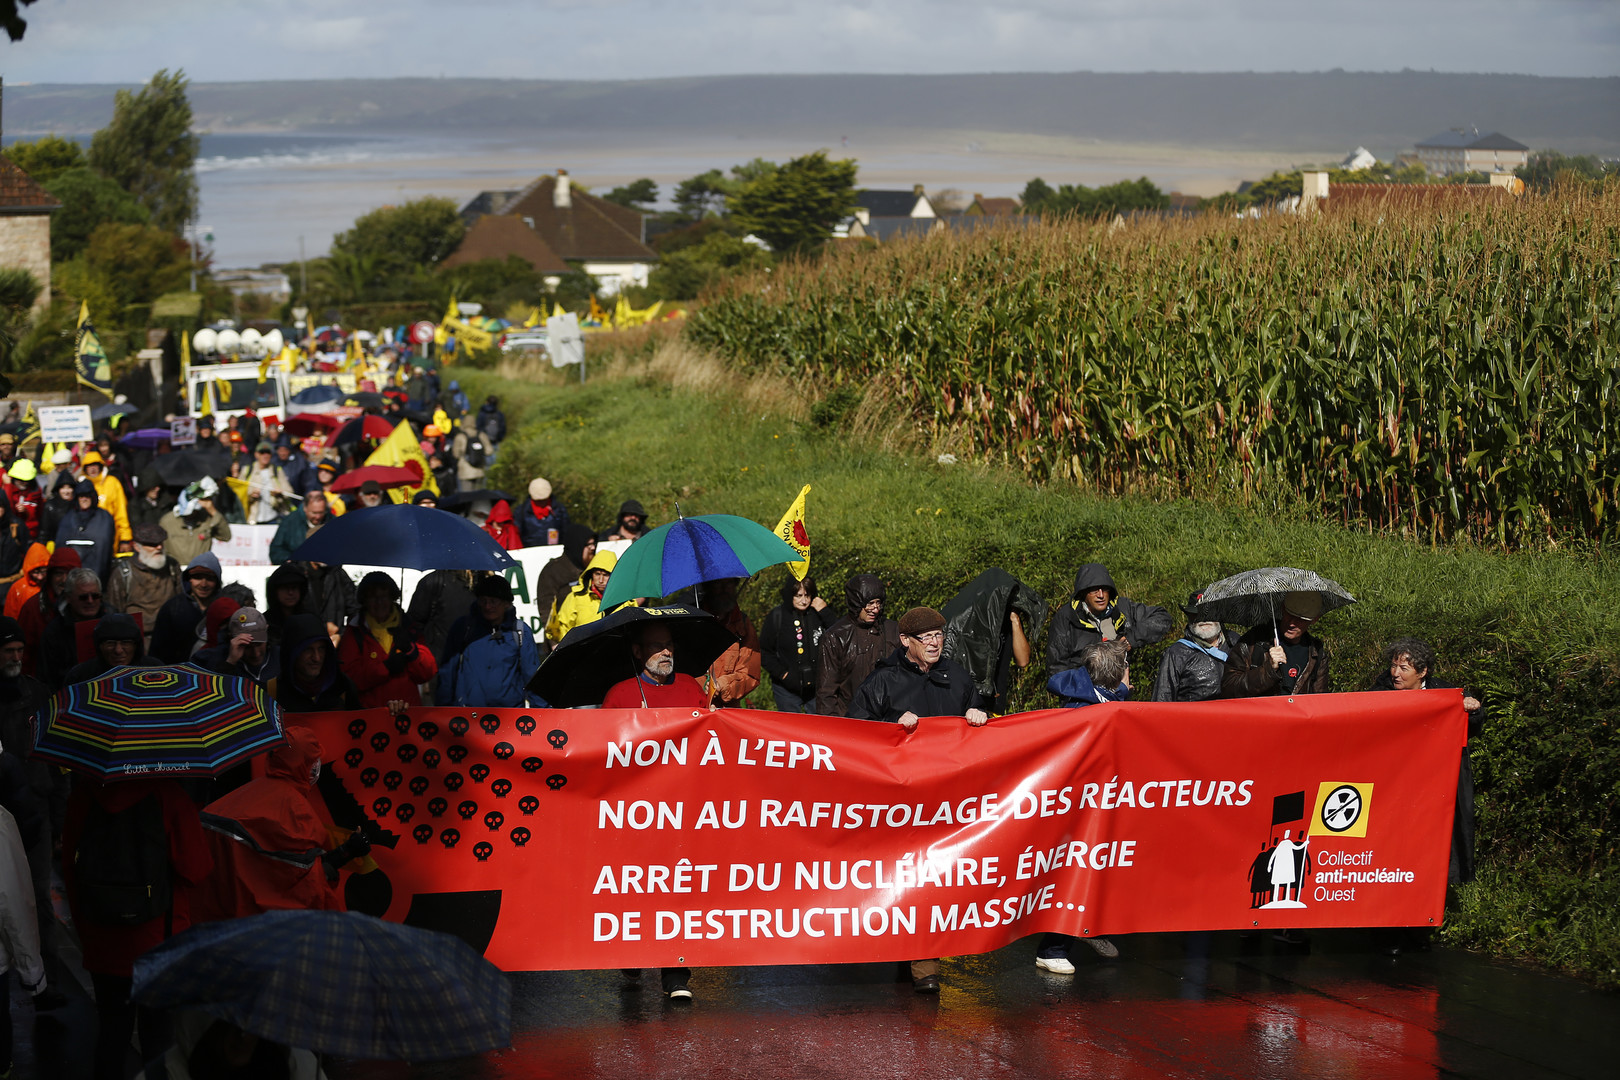 Nucléaire : plusieurs milliers de personnes manifestent contre l'EPR de Flamanville (PHOTOS, VIDEOS)